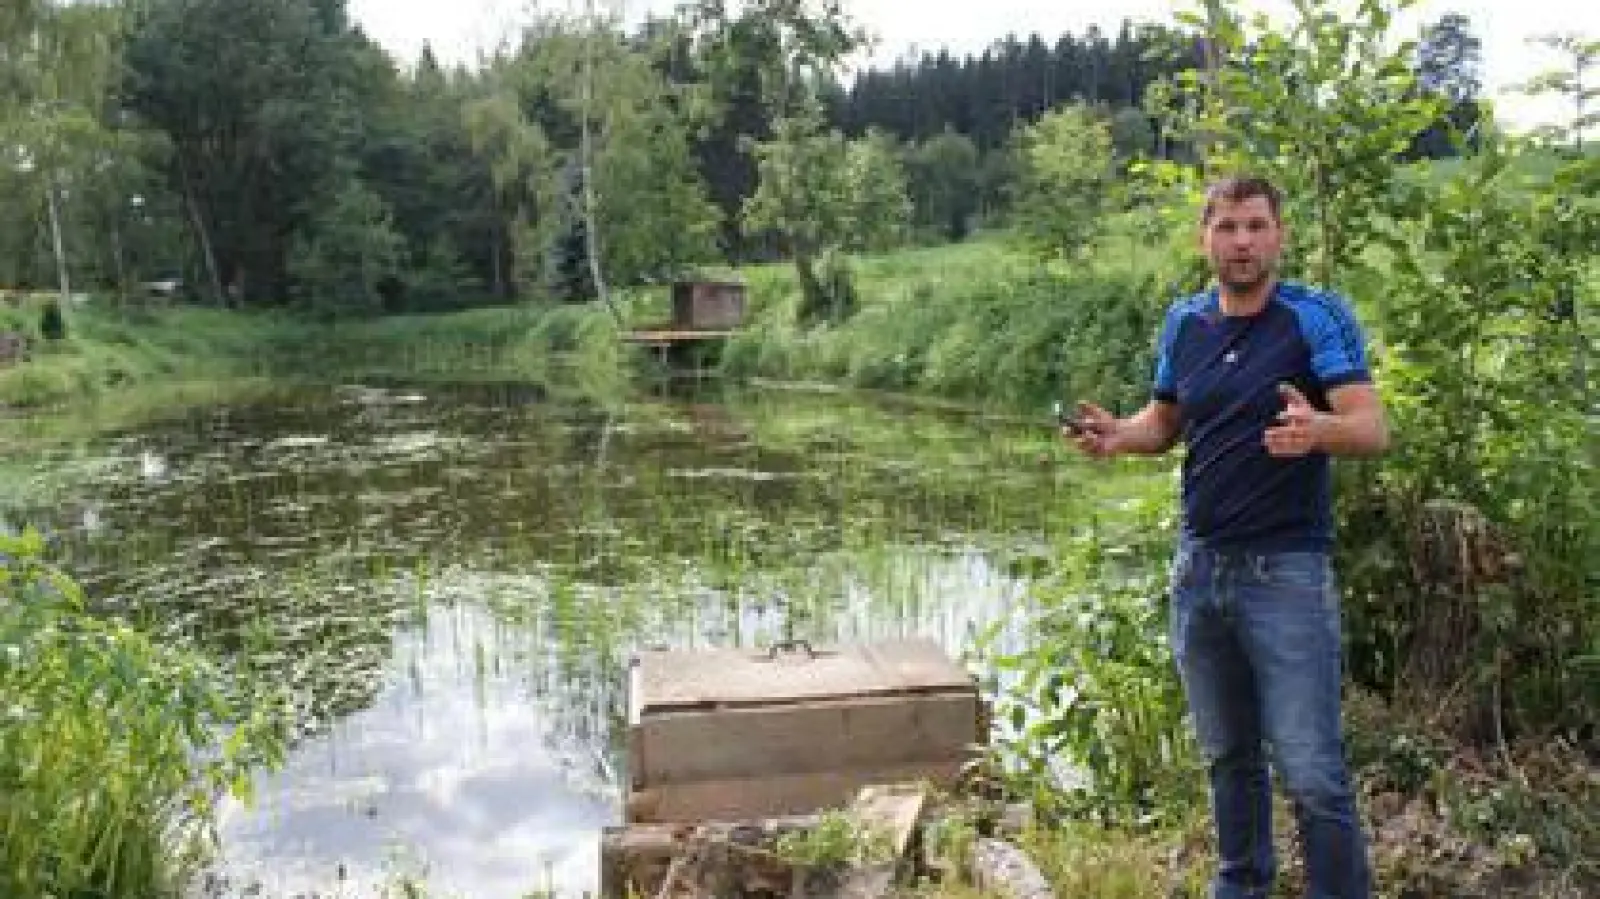 Peter Gerrer , Eigentümer des Weihers bei Heretshausen, erklärt wie er das Gewässer zu Jahresbeginn ausgebaggert hat, um es langfristig wieder nutzbar zu machen und mit Fischen zu besiedeln.